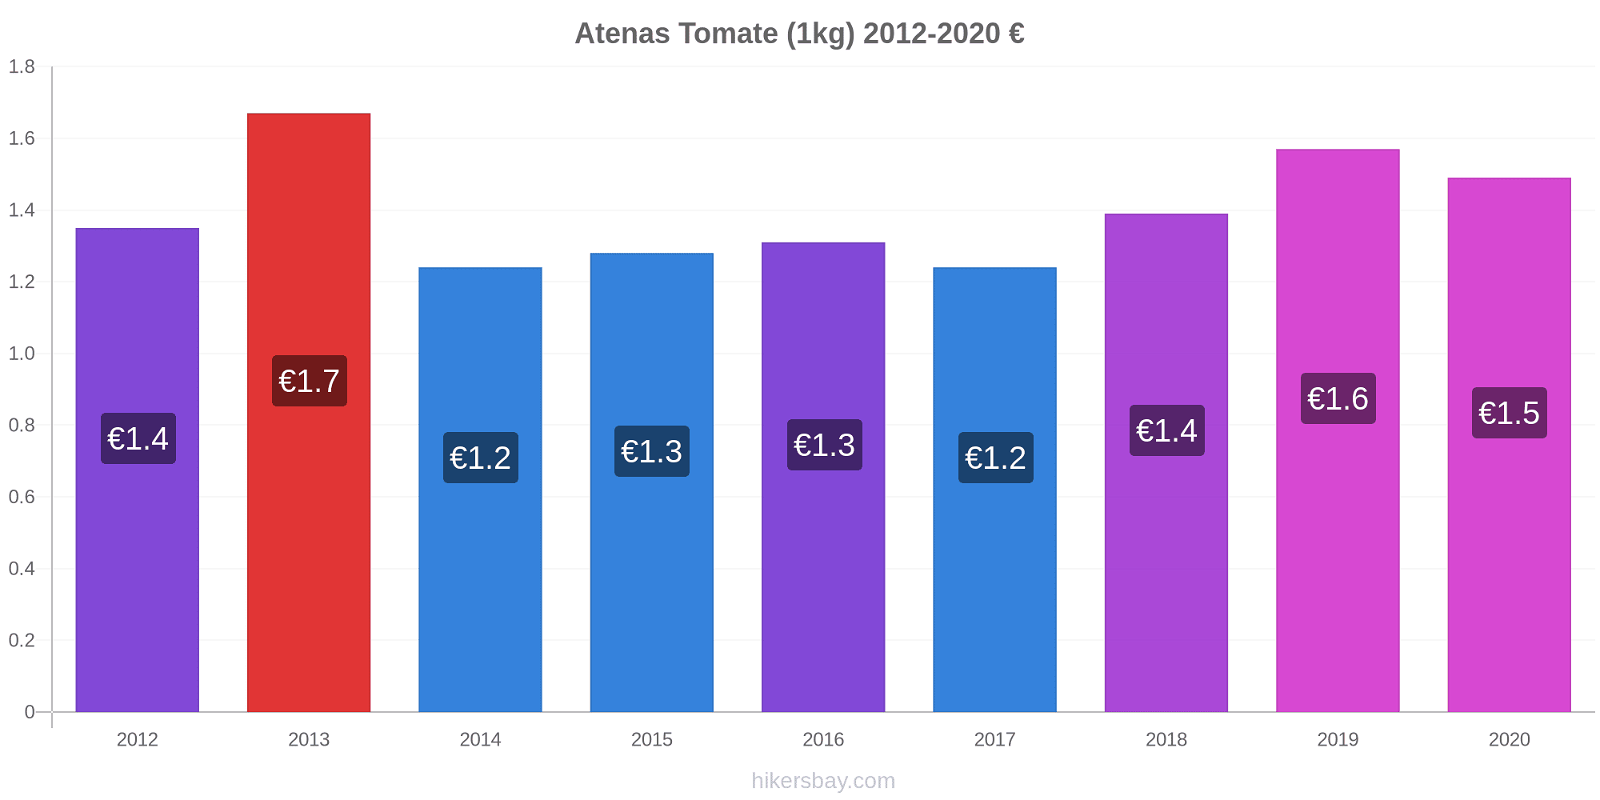 Atenas cambios de precios Tomate (1kg) hikersbay.com